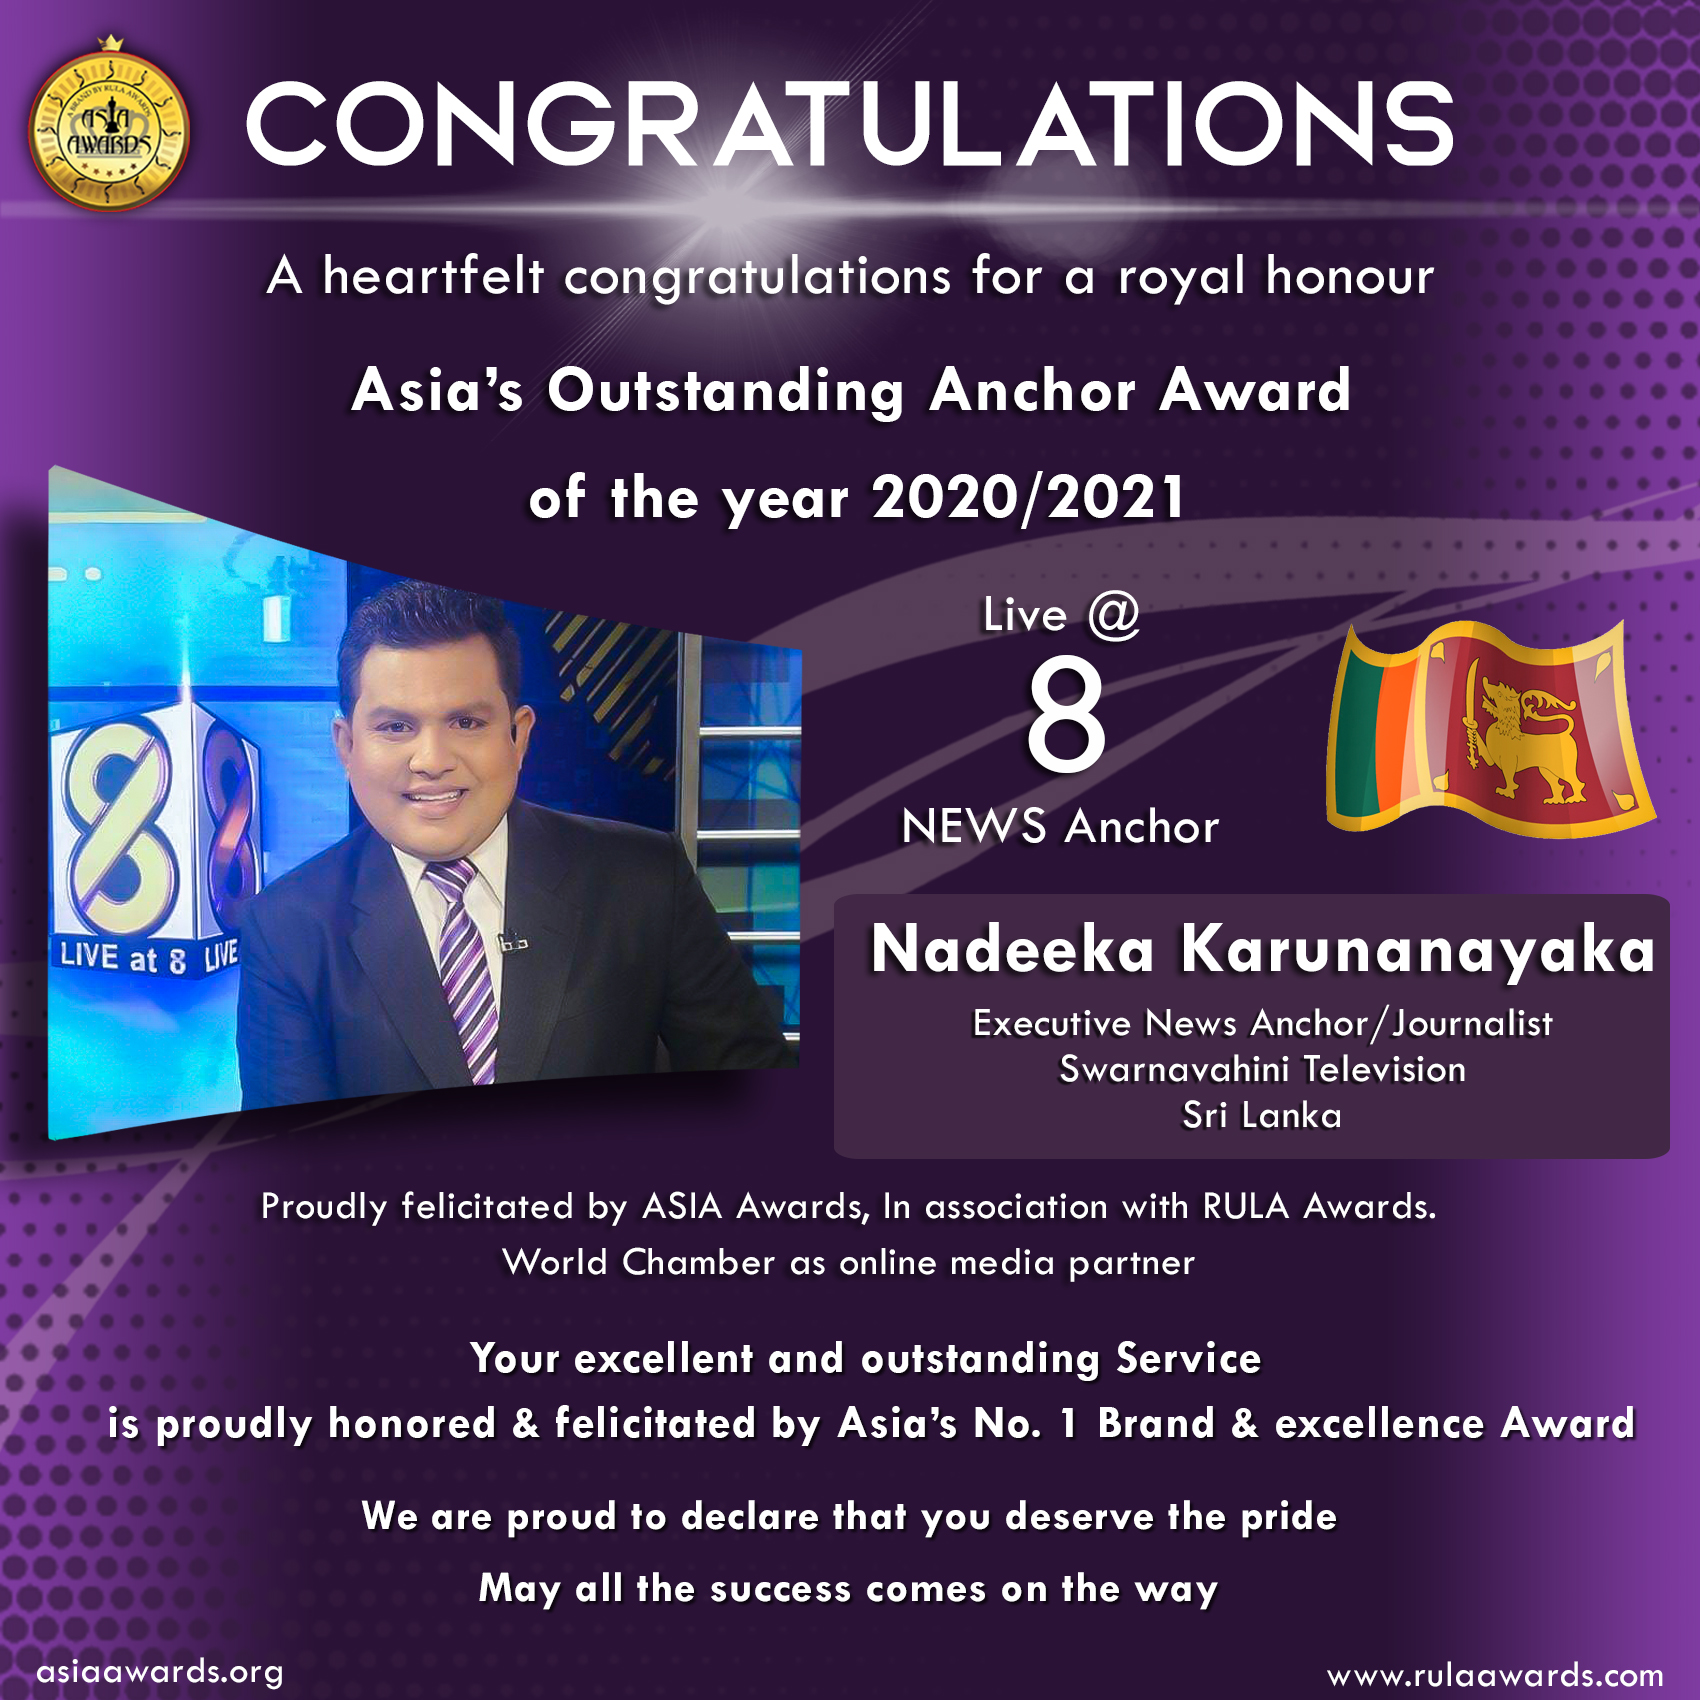 Nadeeka Karunanayaka has bagged Asia's Outstanding Anchor Award